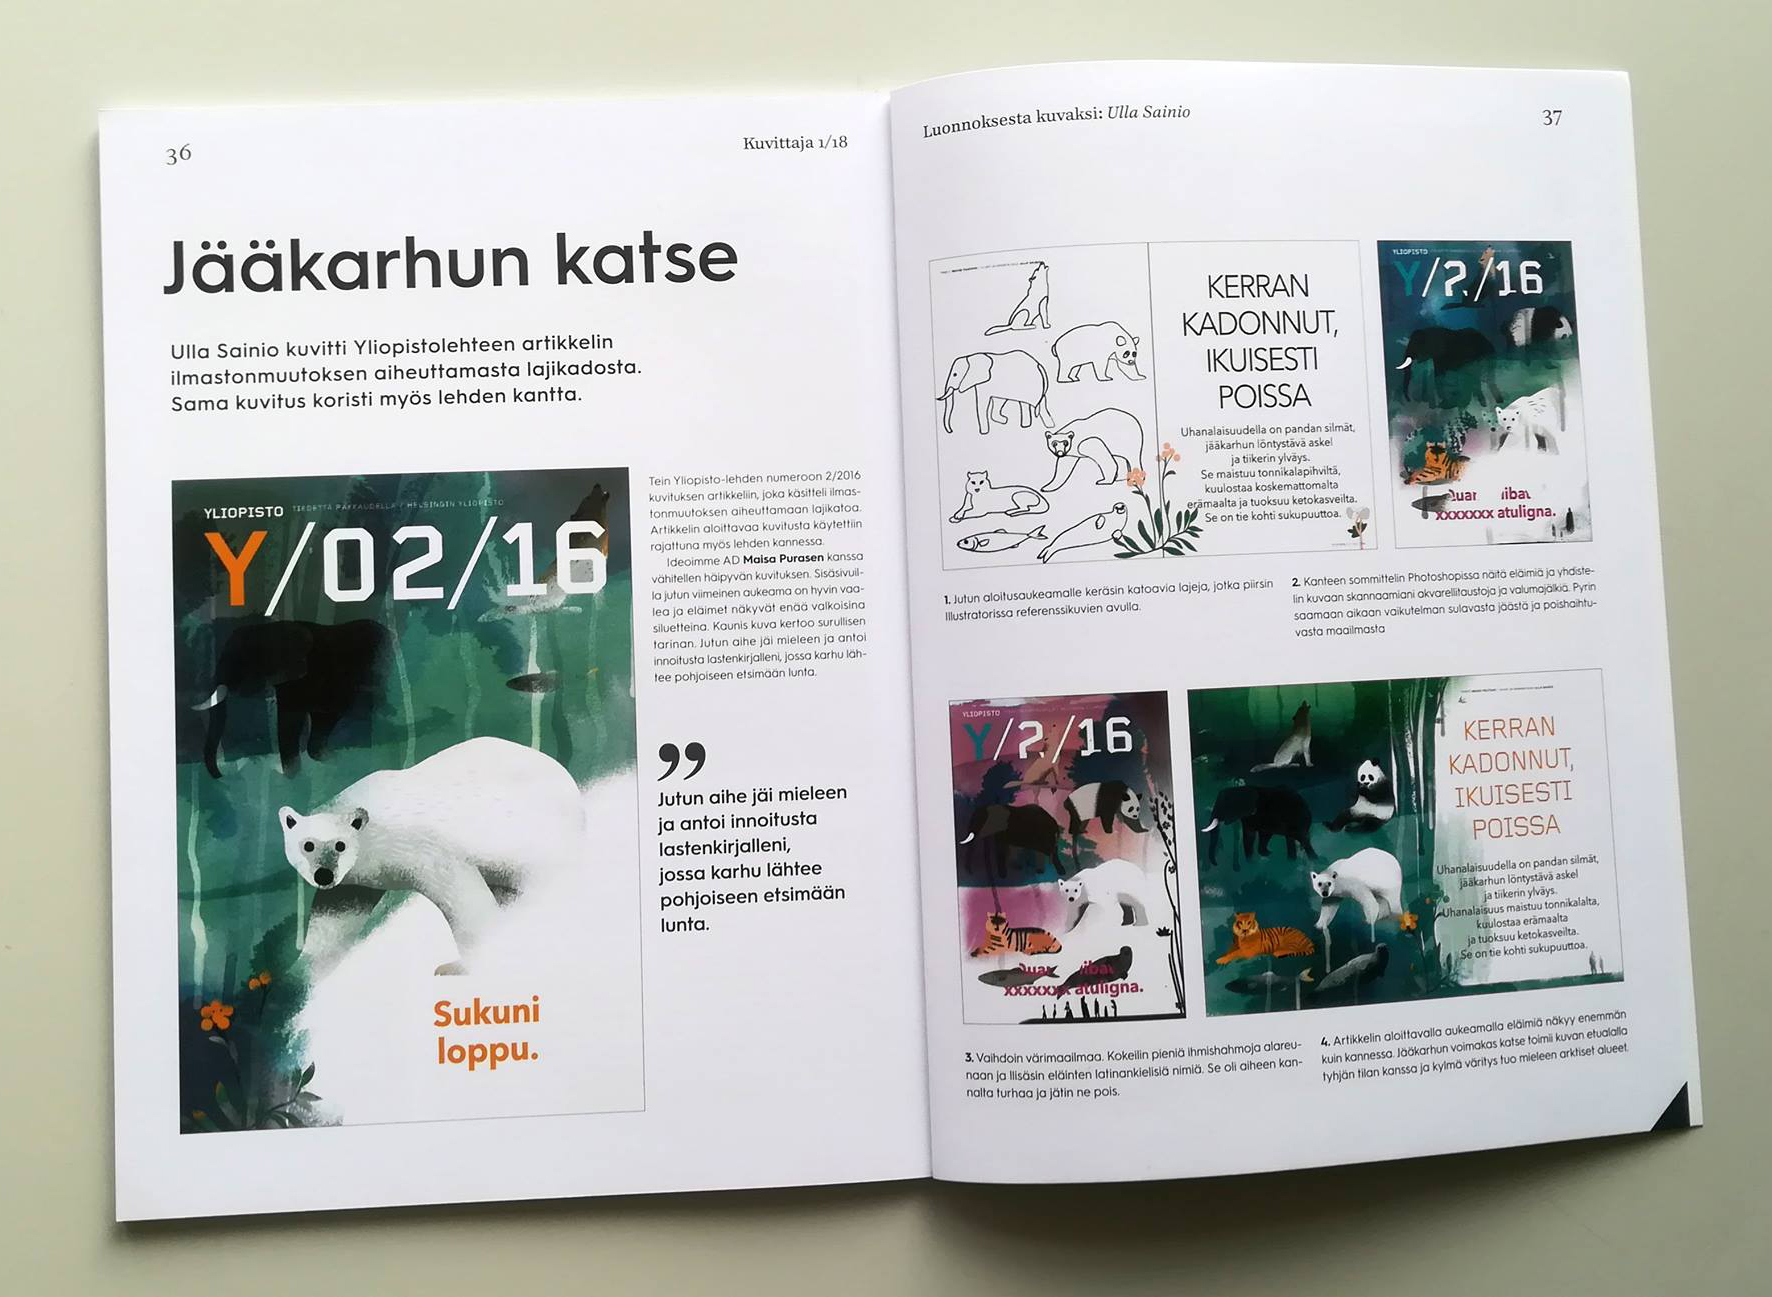 Extinction illustration in Kuvittajat magazine